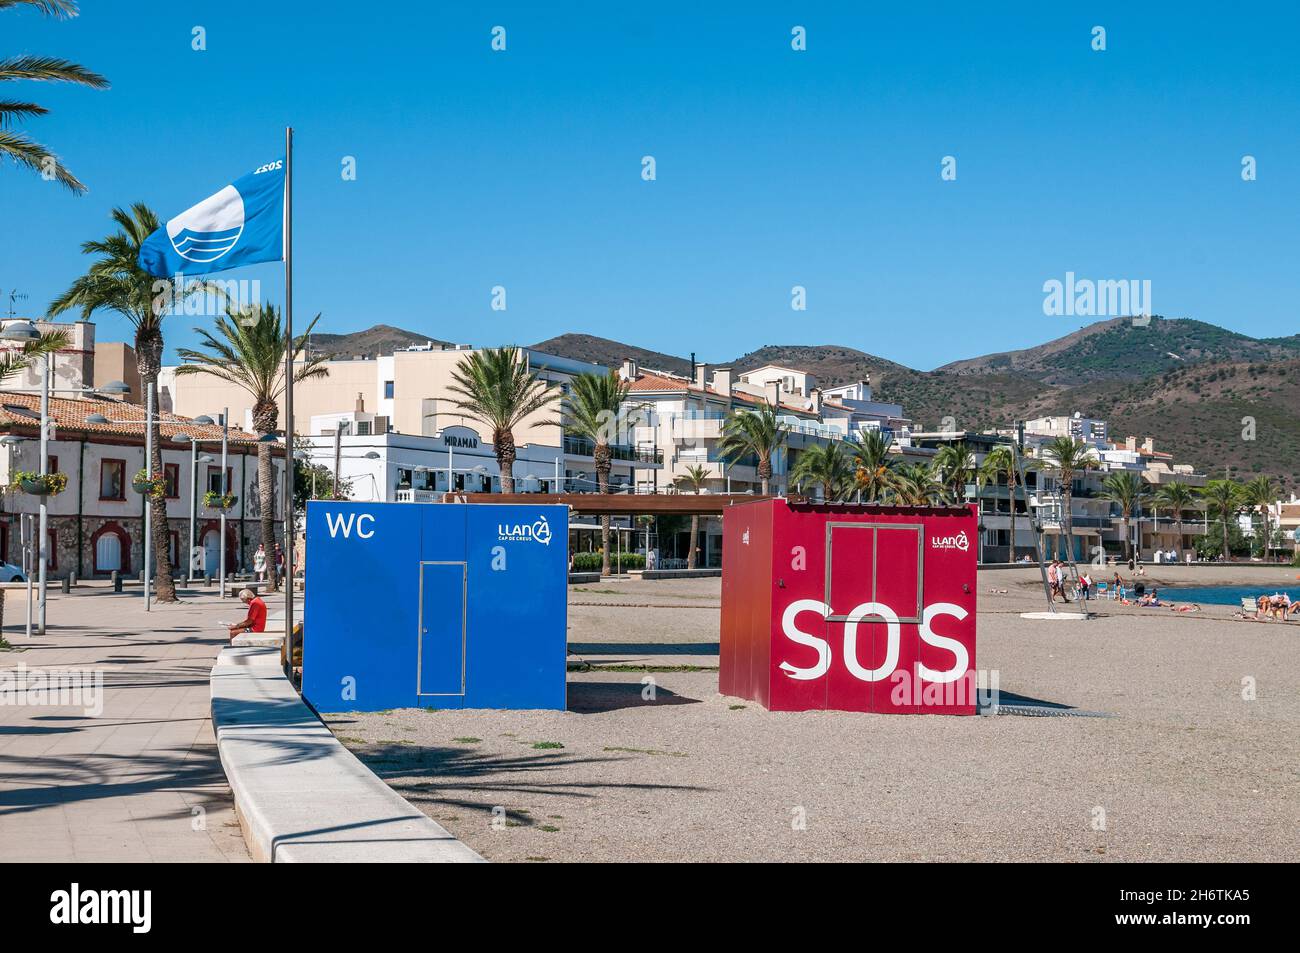 zone de toilette, SOS, et drapeau bleu, plage urbaine, plage de Llança,Costa Brava, Catalogne, Espagne Banque D'Images